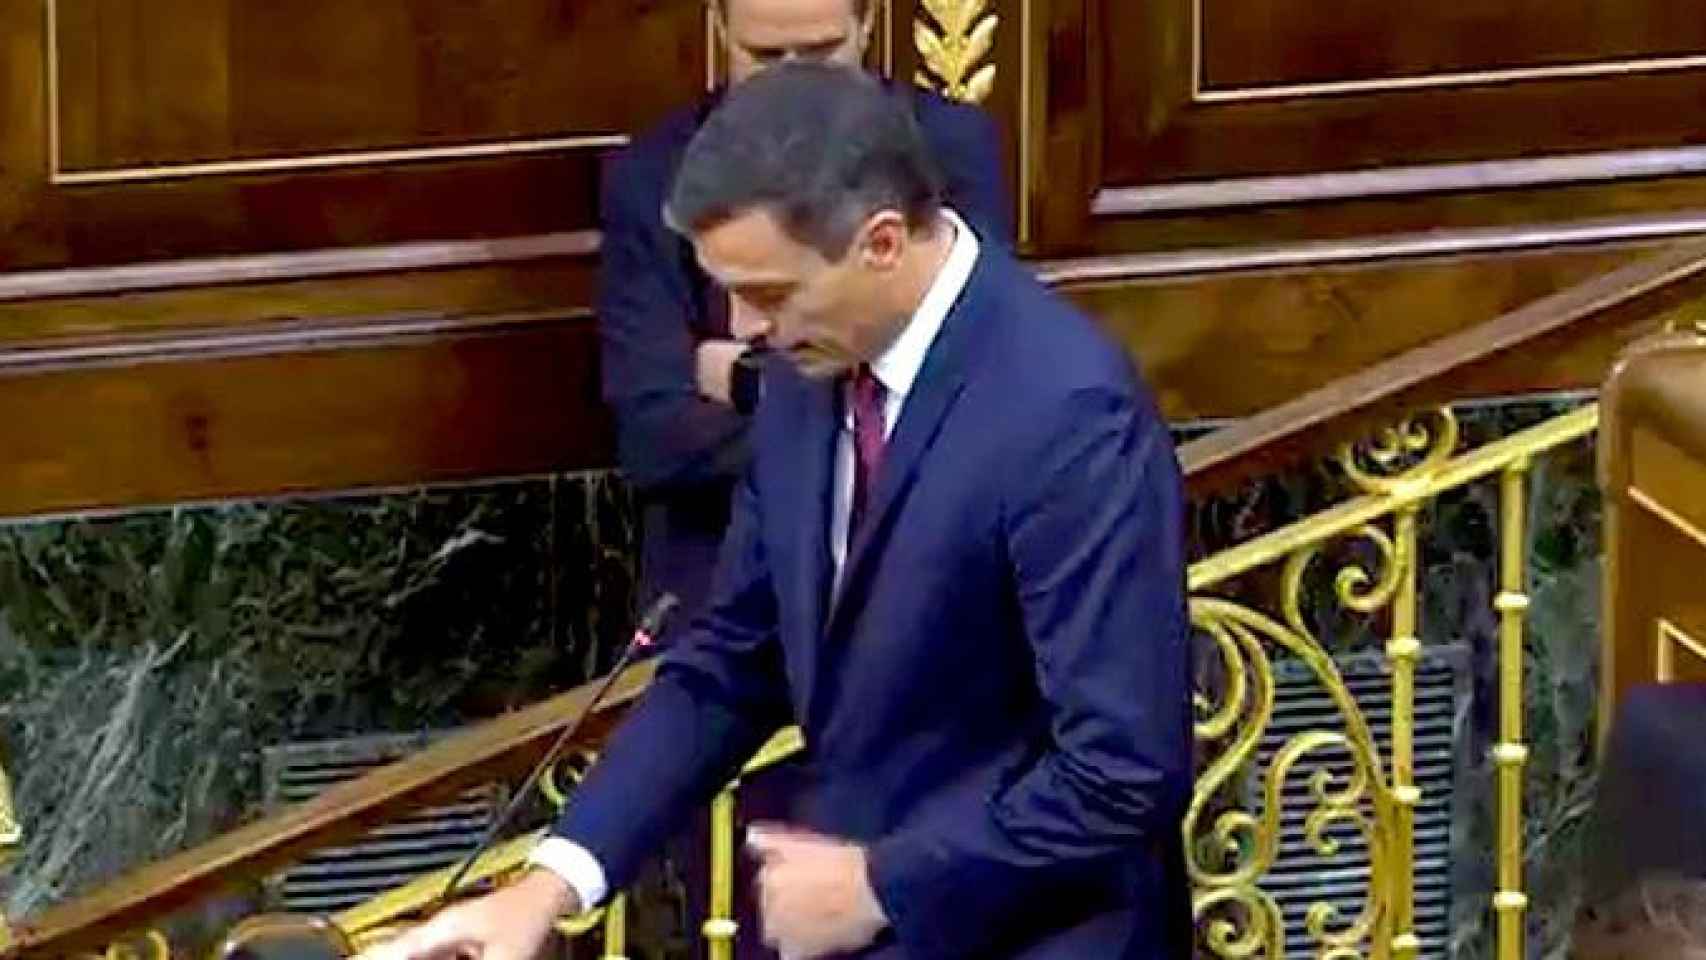 Momento en el que Pedro Sánchez se queda sin micrófono en el Congreso / CG